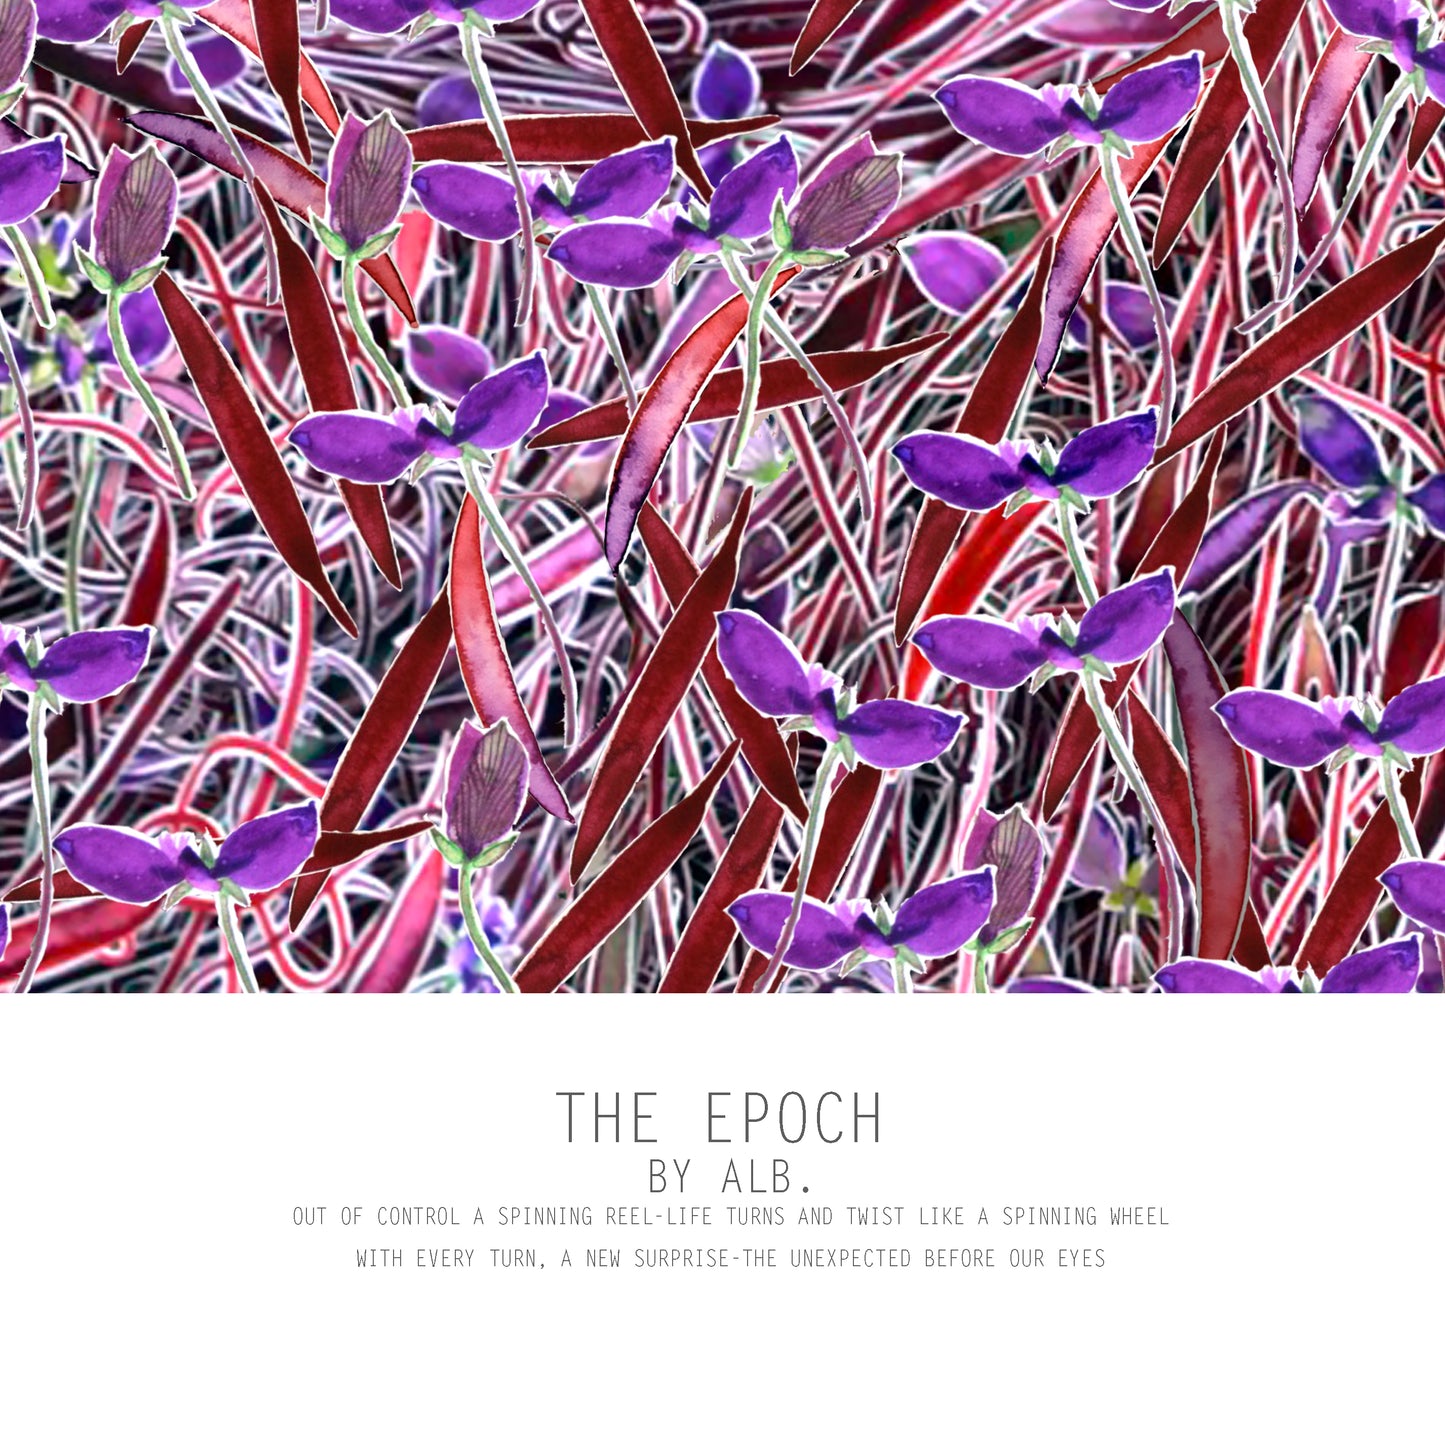 THE EPOCH